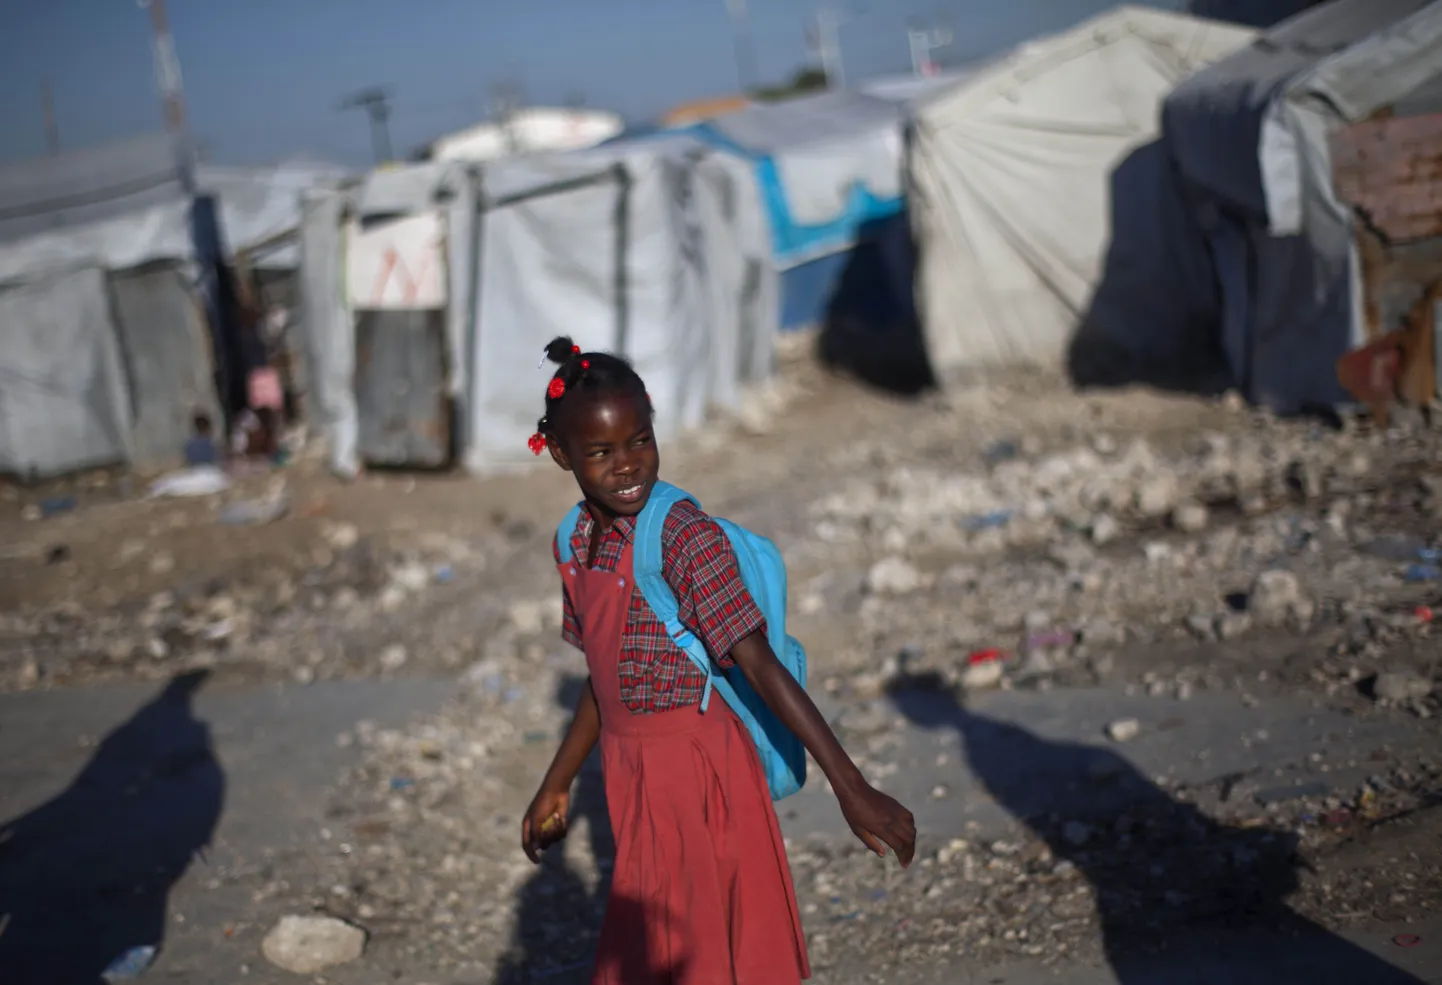 Haiti tüdruk läheb kooli. Taga paistab põgenikelaager, mis pandi püsti pärast  Port-au-Prince'i raputanud maavärinat 2010. aastal ehk kaks aastat tagasi.